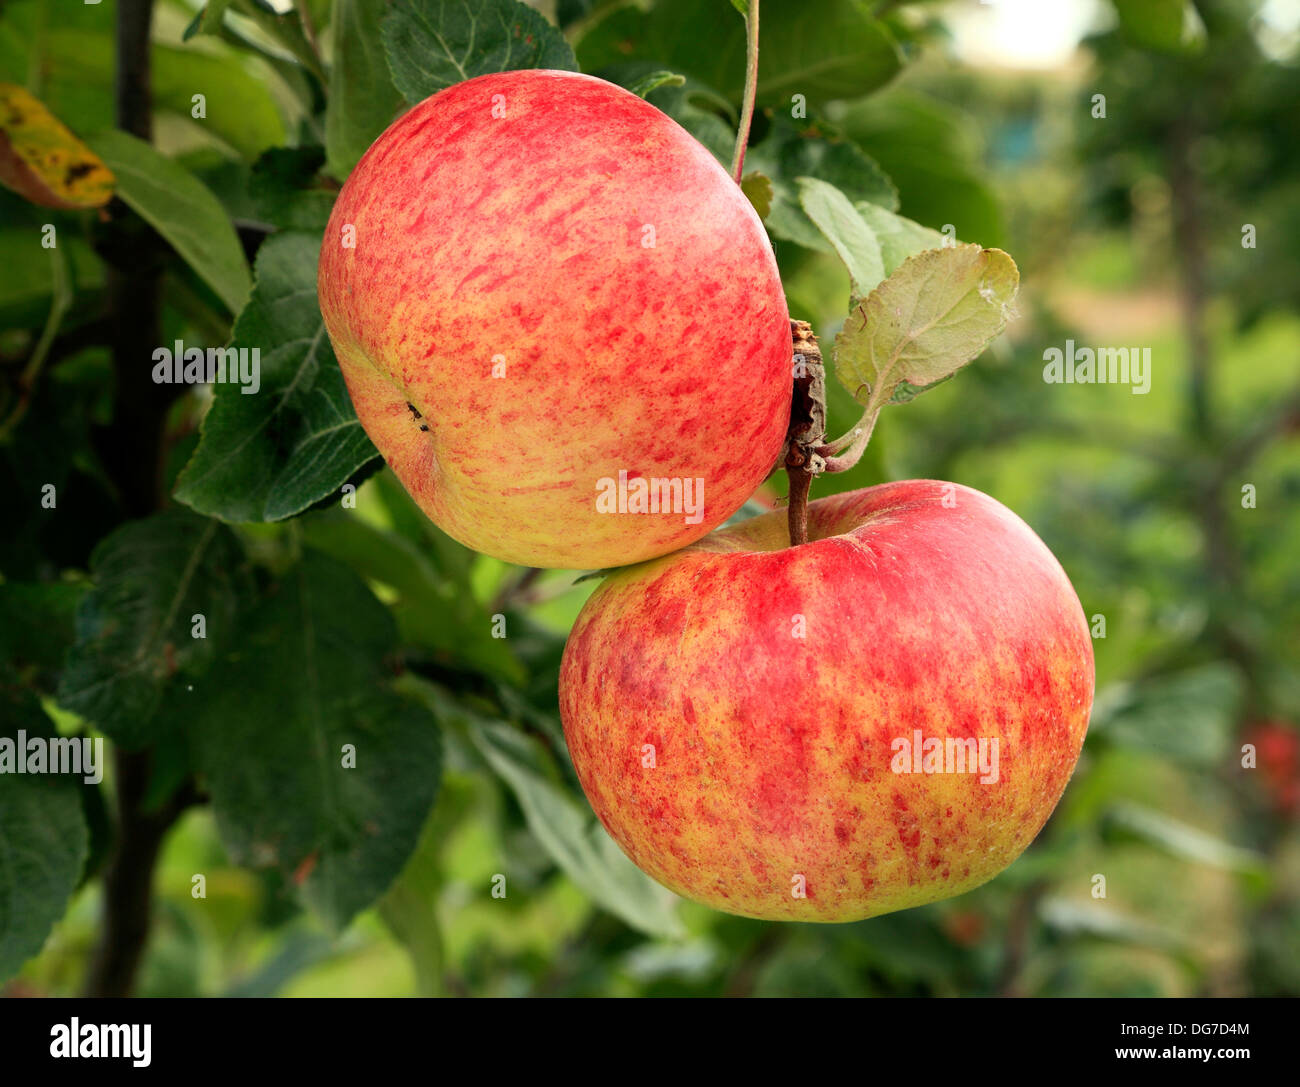 La pomme 'Cox Queen', du nom de la variété, les variétés de pommes Malus domestica growing on tree Norfolk England UK Banque D'Images